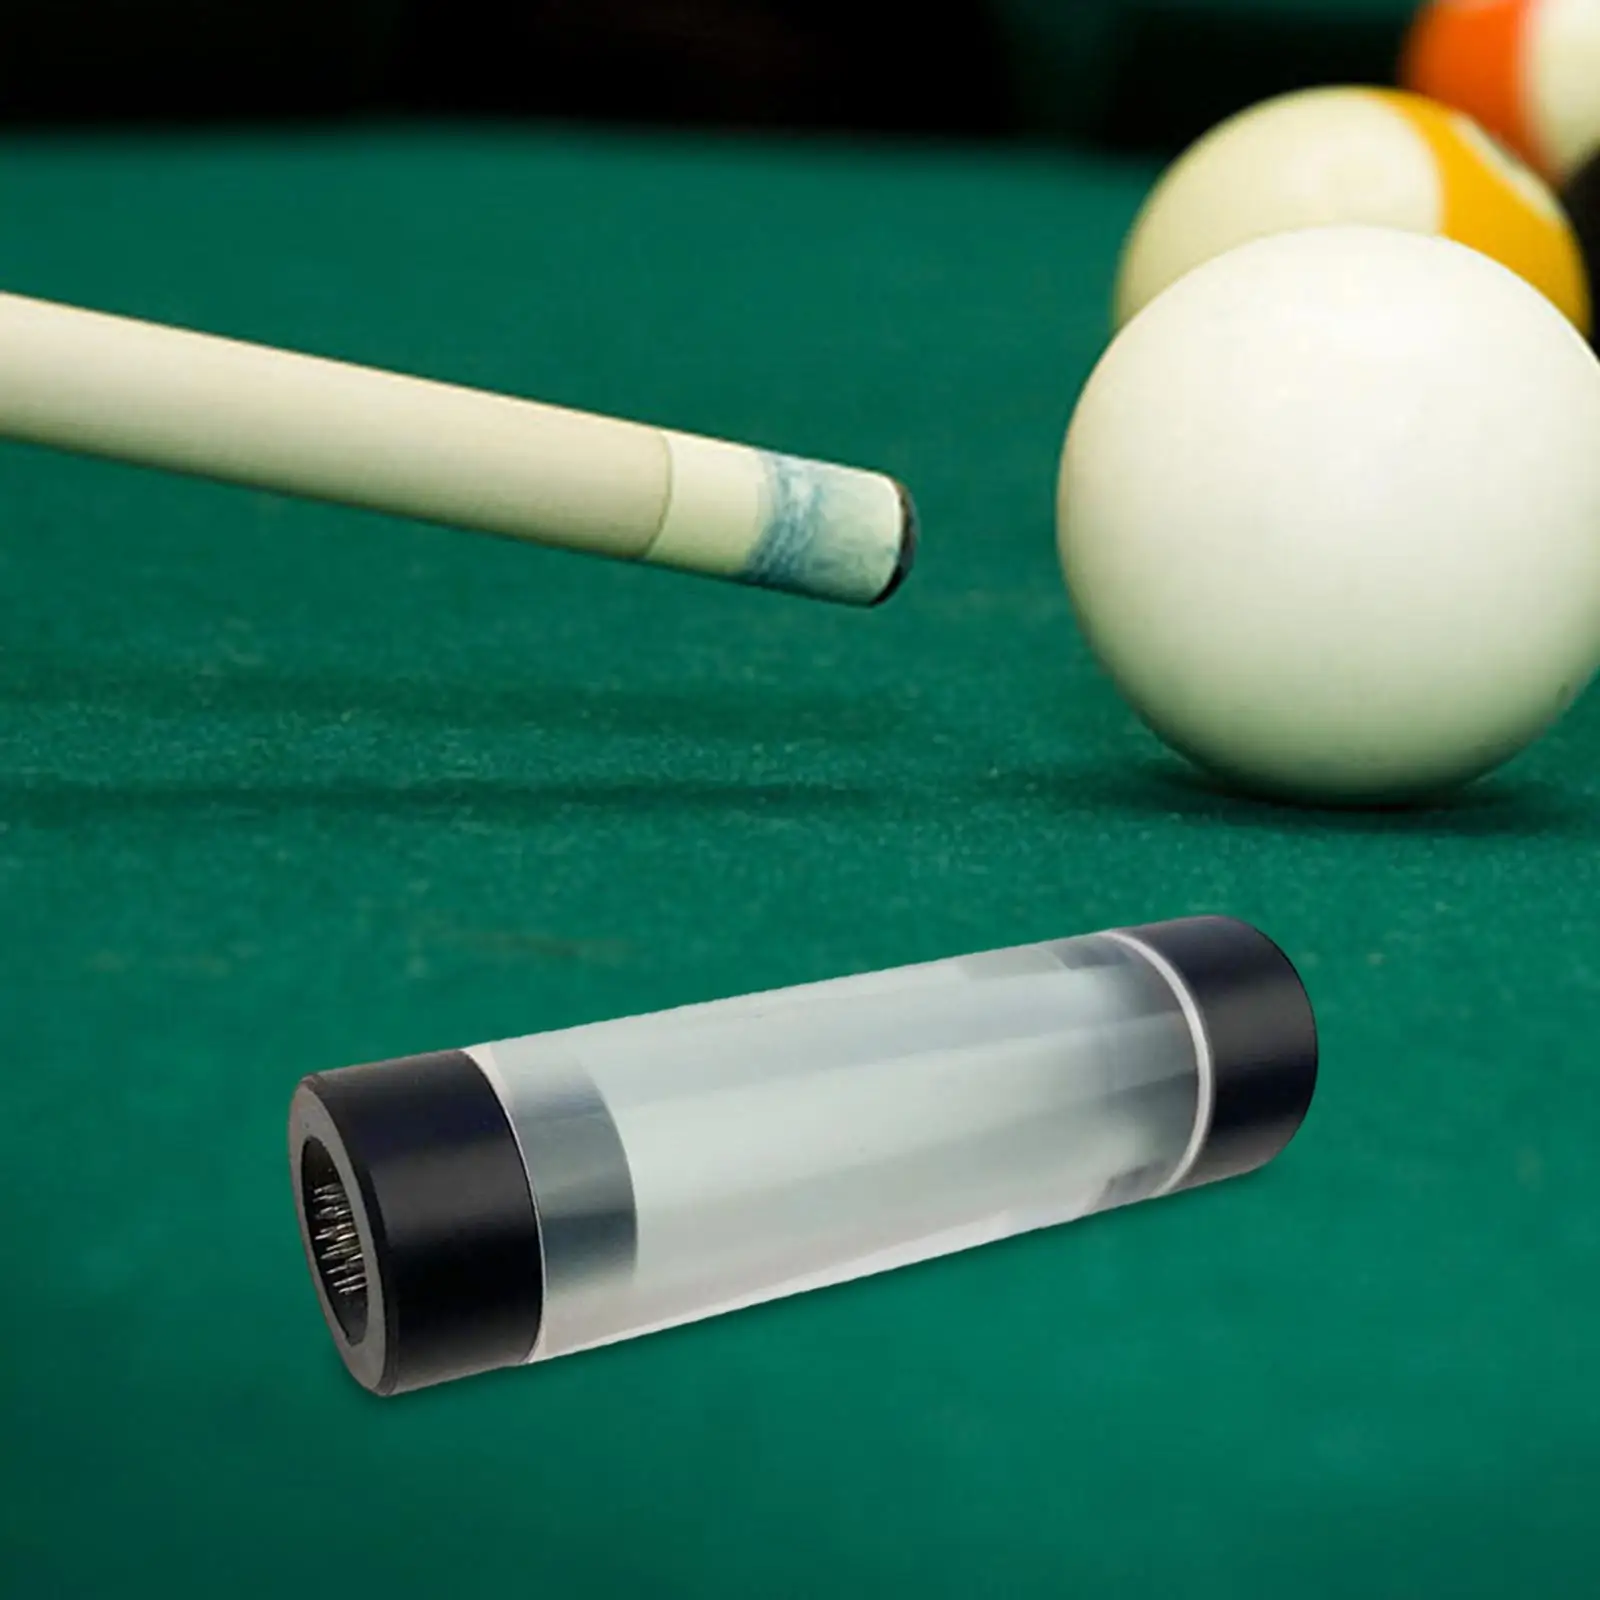 Snooker Pool Cue Tip Shaper Pricker Grinder Lightweight Billiard Pool Cue Tip Tool Billiards Accessories Repair Tool